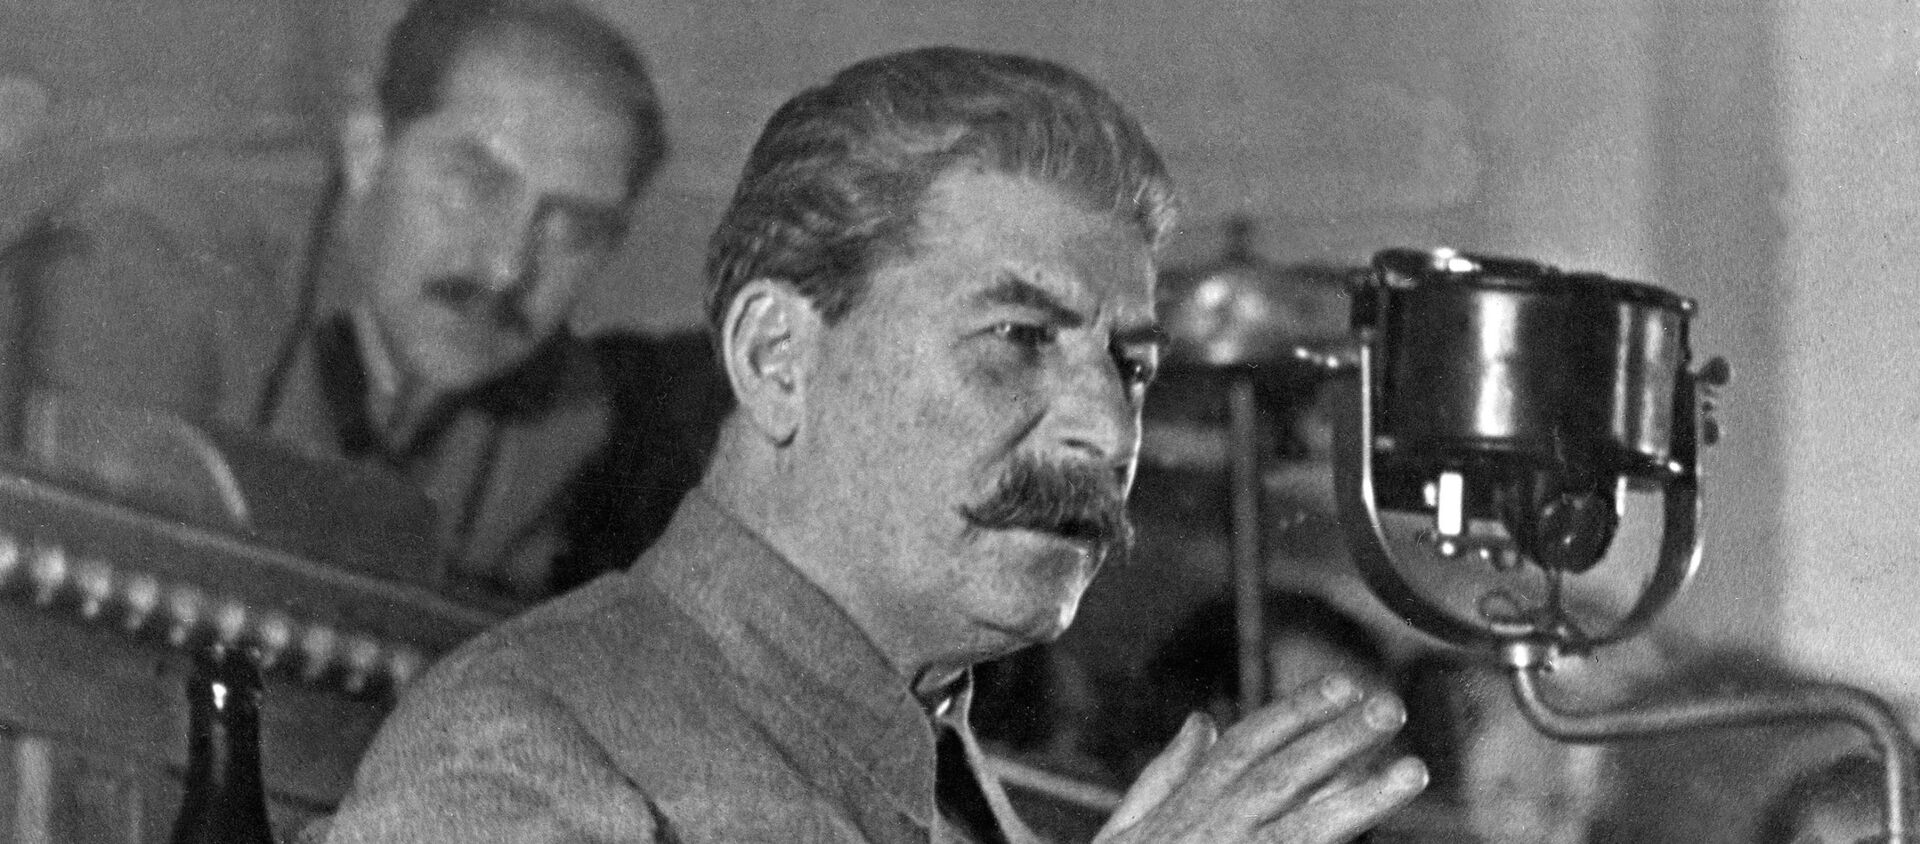 Иосиф Сталин, фото из архива - Sputnik Azərbaycan, 1920, 11.01.2021